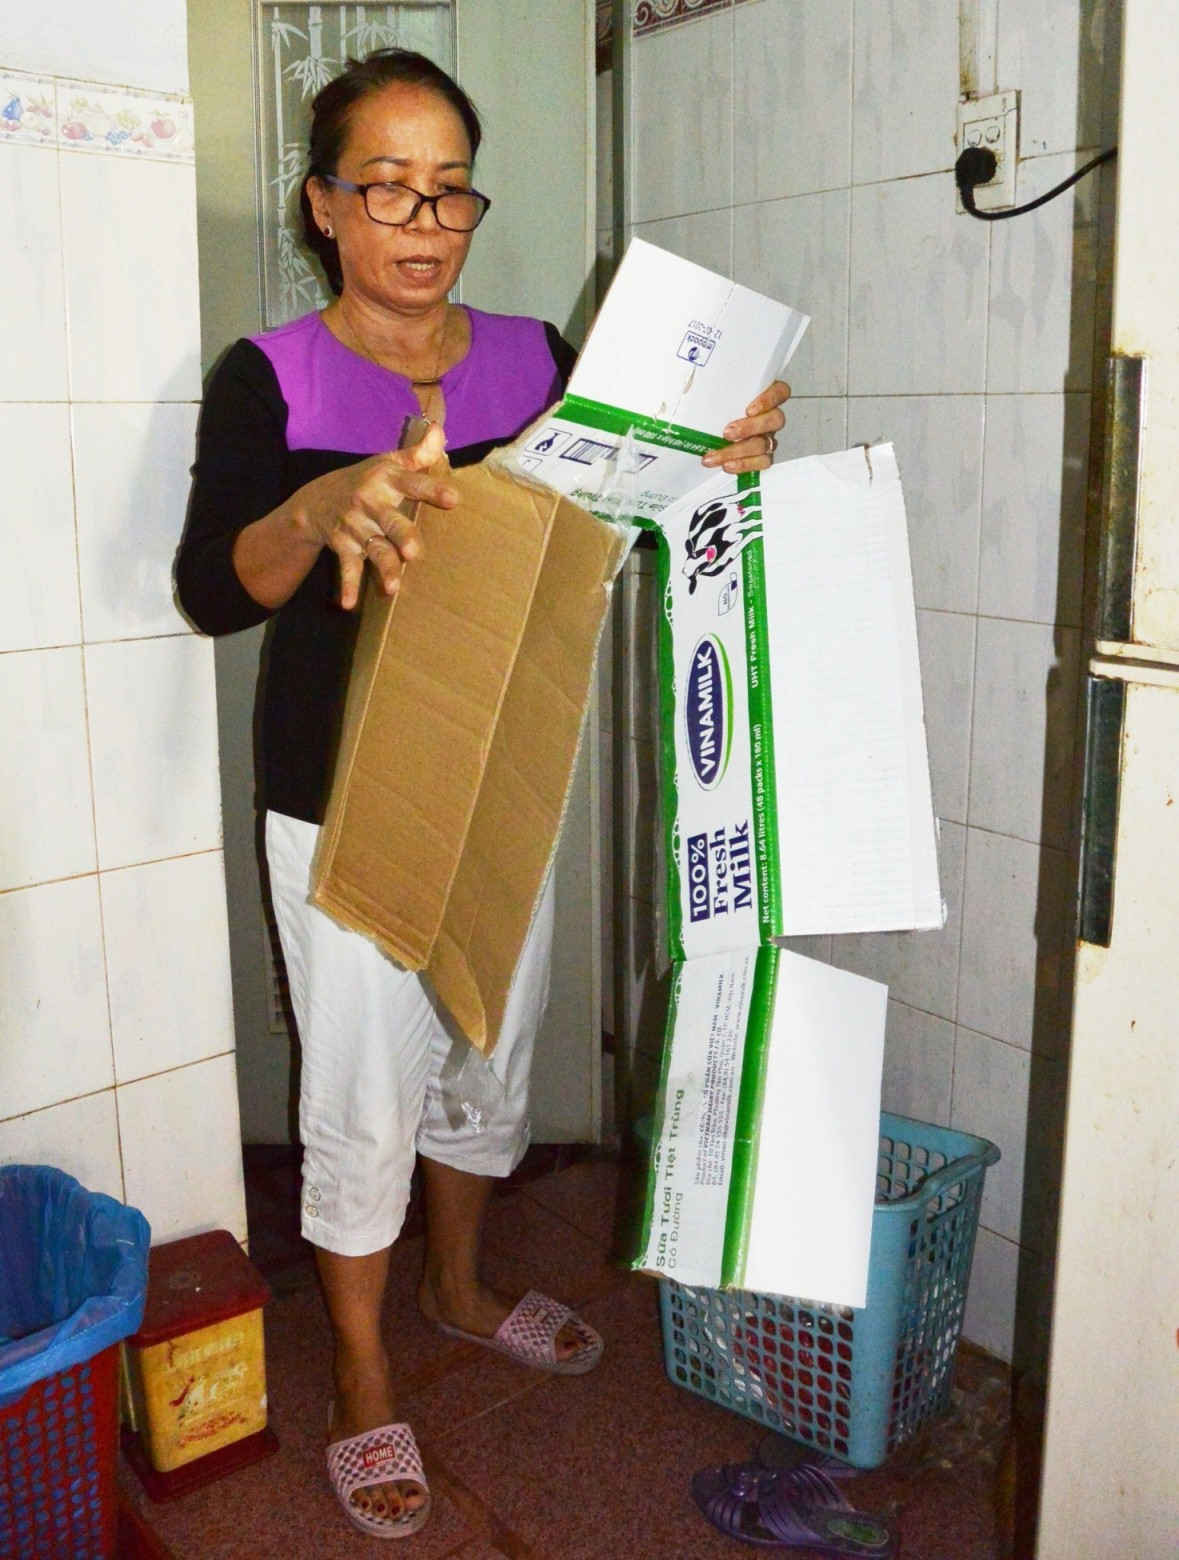 Phân loại rác đã thành nếp chung trong mỗi gia đình ở khu phố Thanh Sơn 1A, phường Thanh Bình, quận Hải Châu, TP. Đà Nẵng